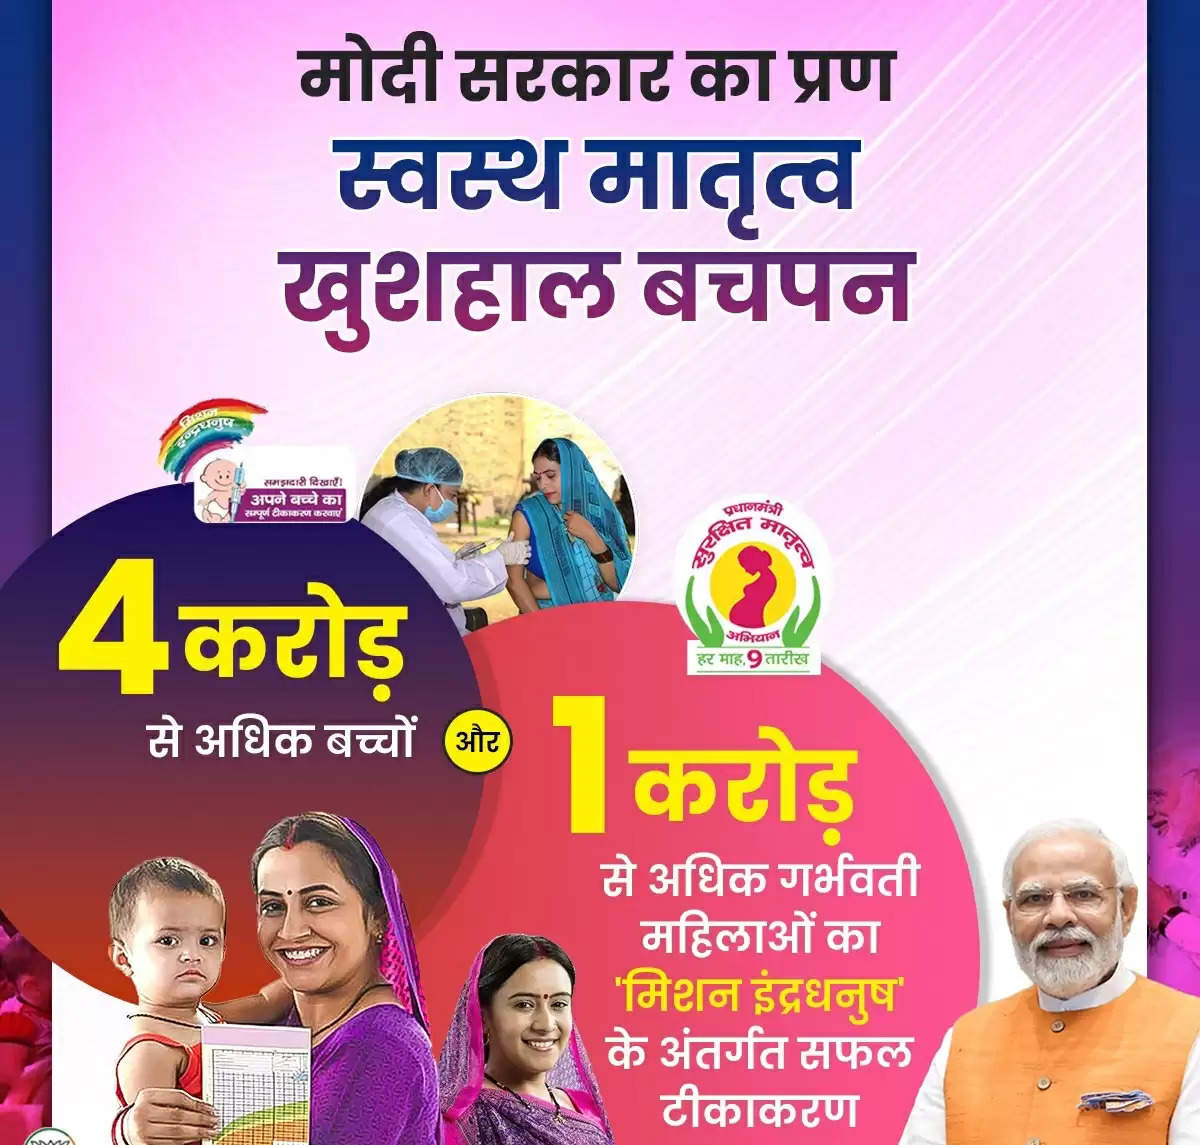 बिहार के सभी छह आकांक्षी जिलों में ''खुशहाल बचपन'' अभियान शुरू